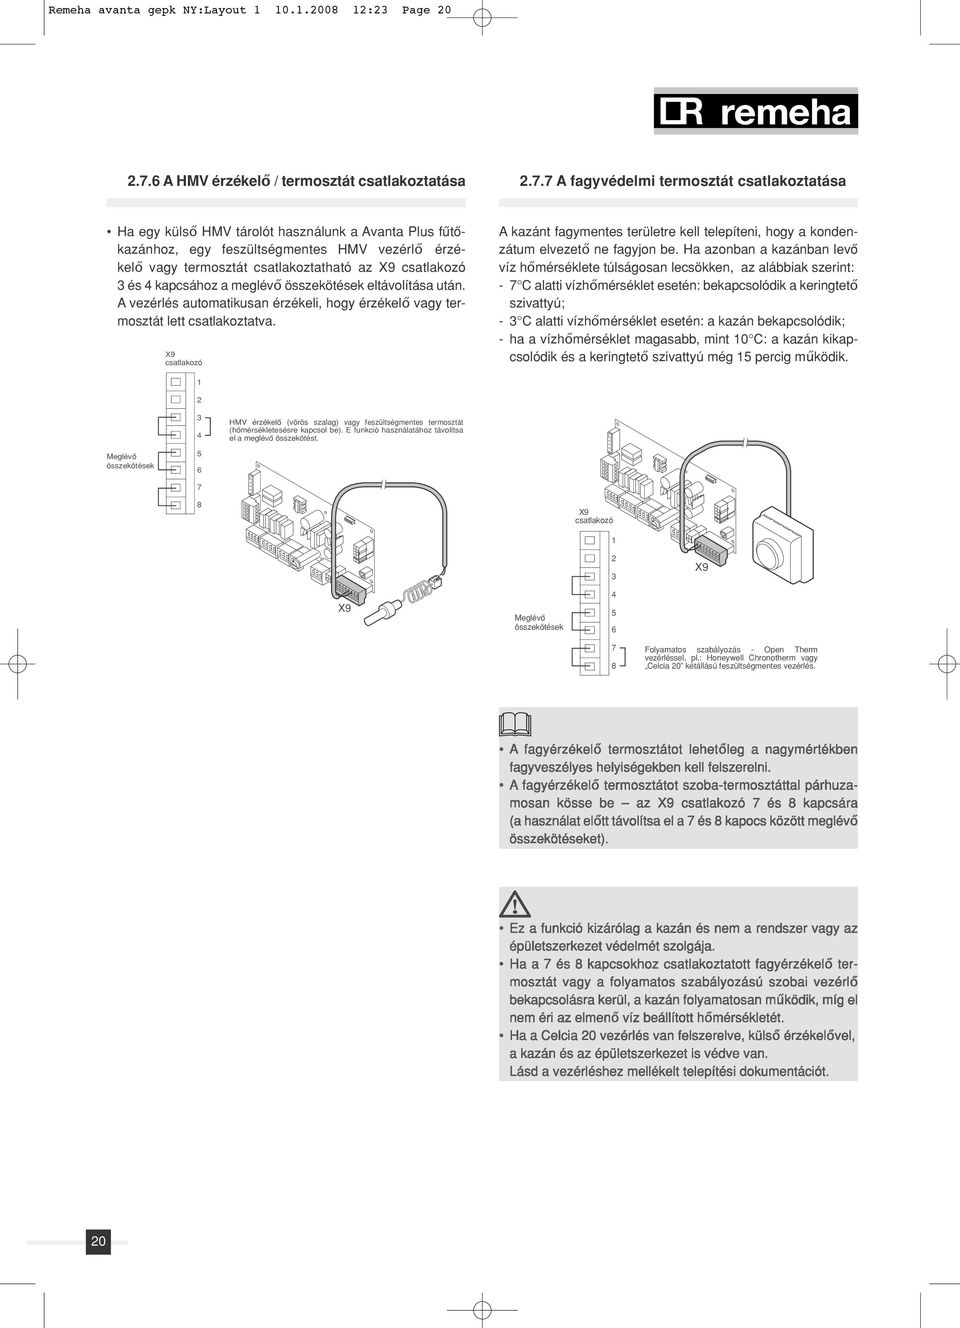 7 A fagyvédelmi termosztát csatlakoztatása Ha egy külső HMV tárolót használunk a Avanta Plus fûtô - kazánhoz, egy feszültségmentes HMV vezérlő érzékelő vagy termosztát csatlakoztatható az X9